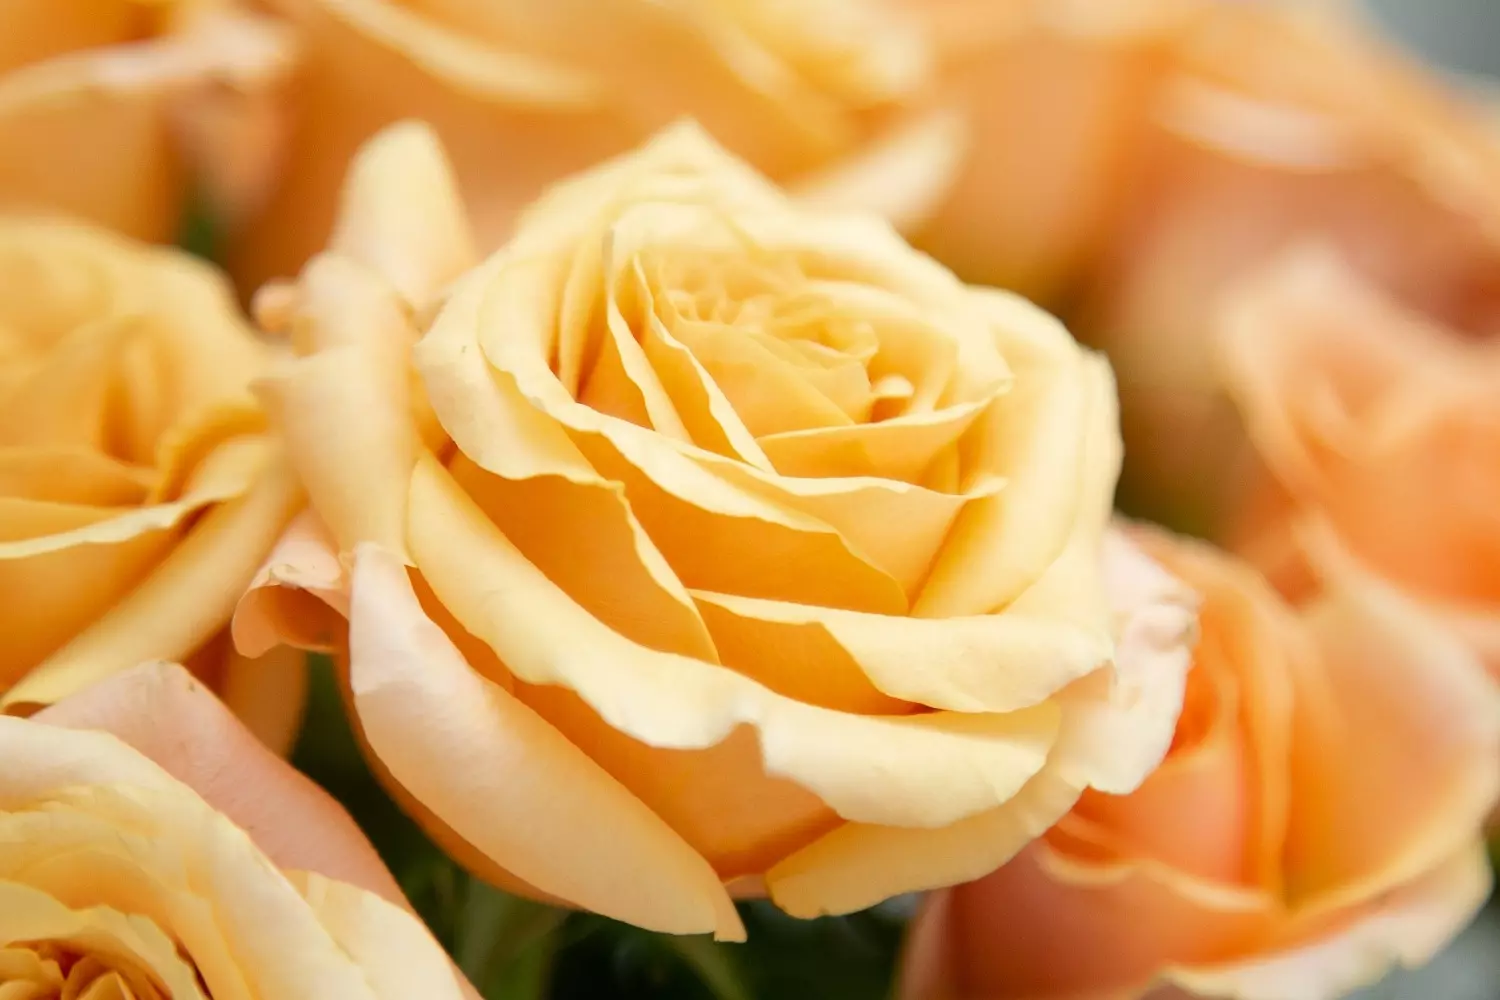 Роза благородного персикового оттенка подчеркнет гармонию в отношениях, подарит теплоту и отличное настроение